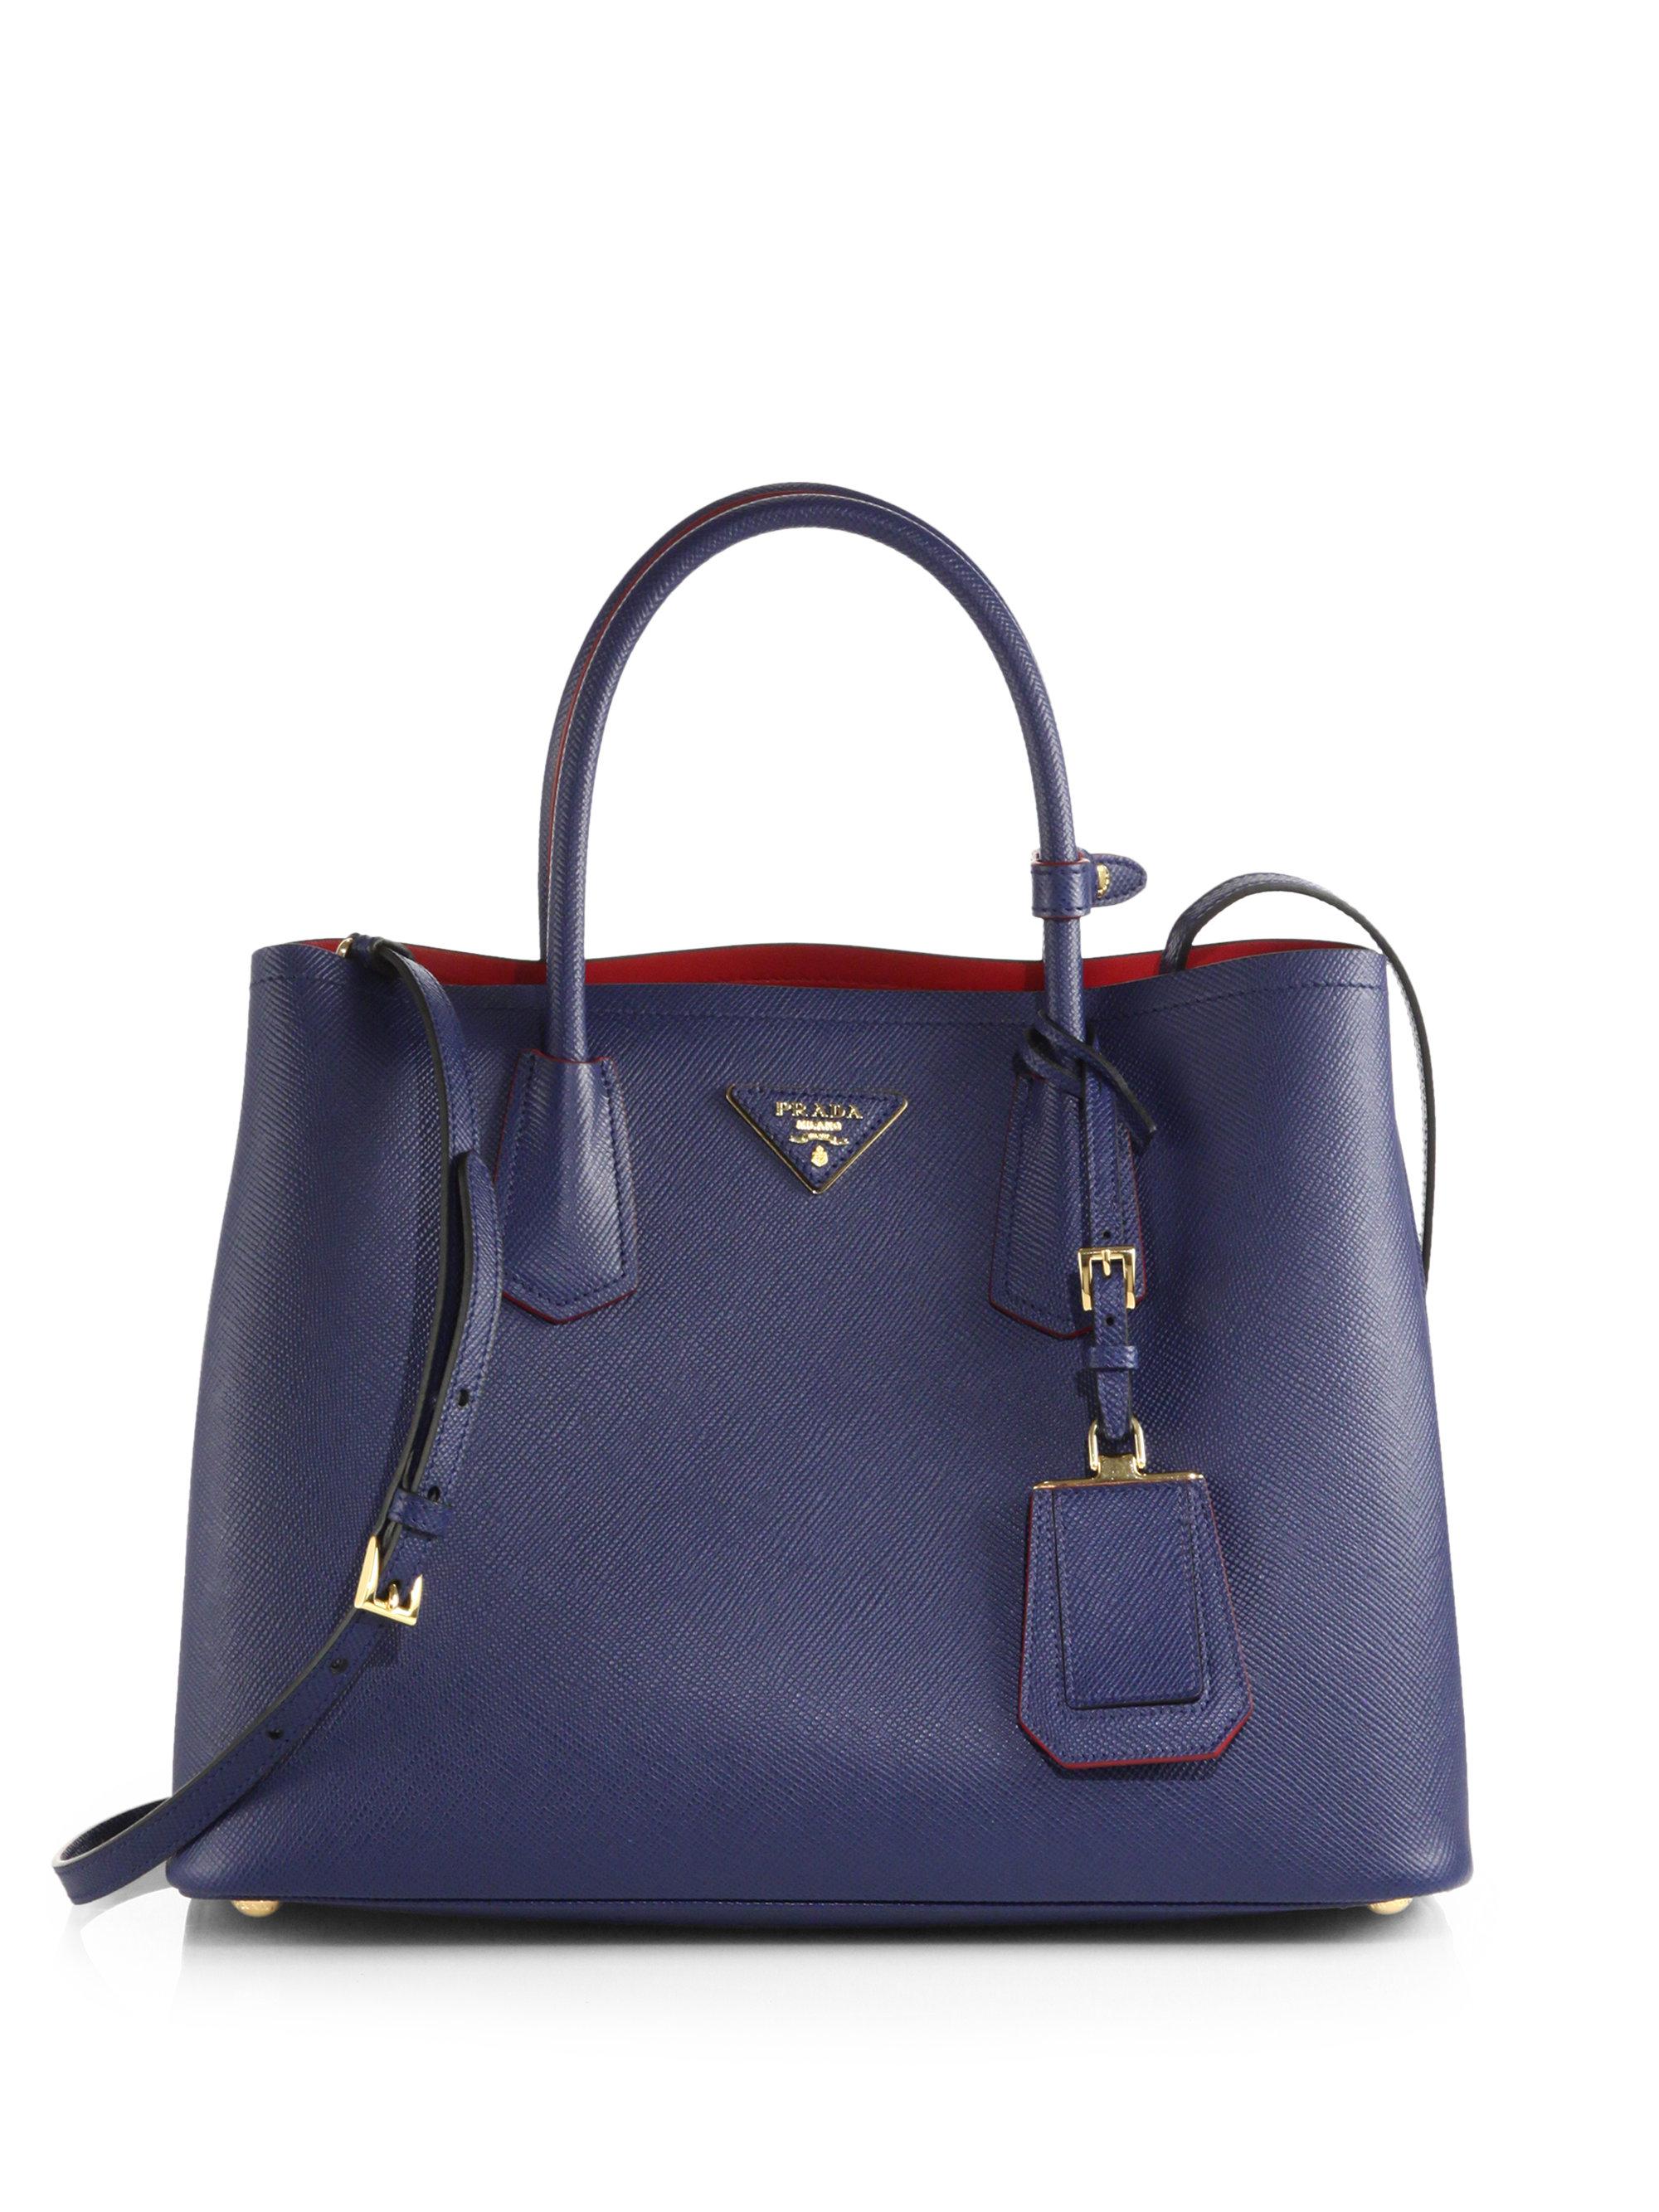 Lyst - Prada Saffiano Cuir Small Double Bag in Blue